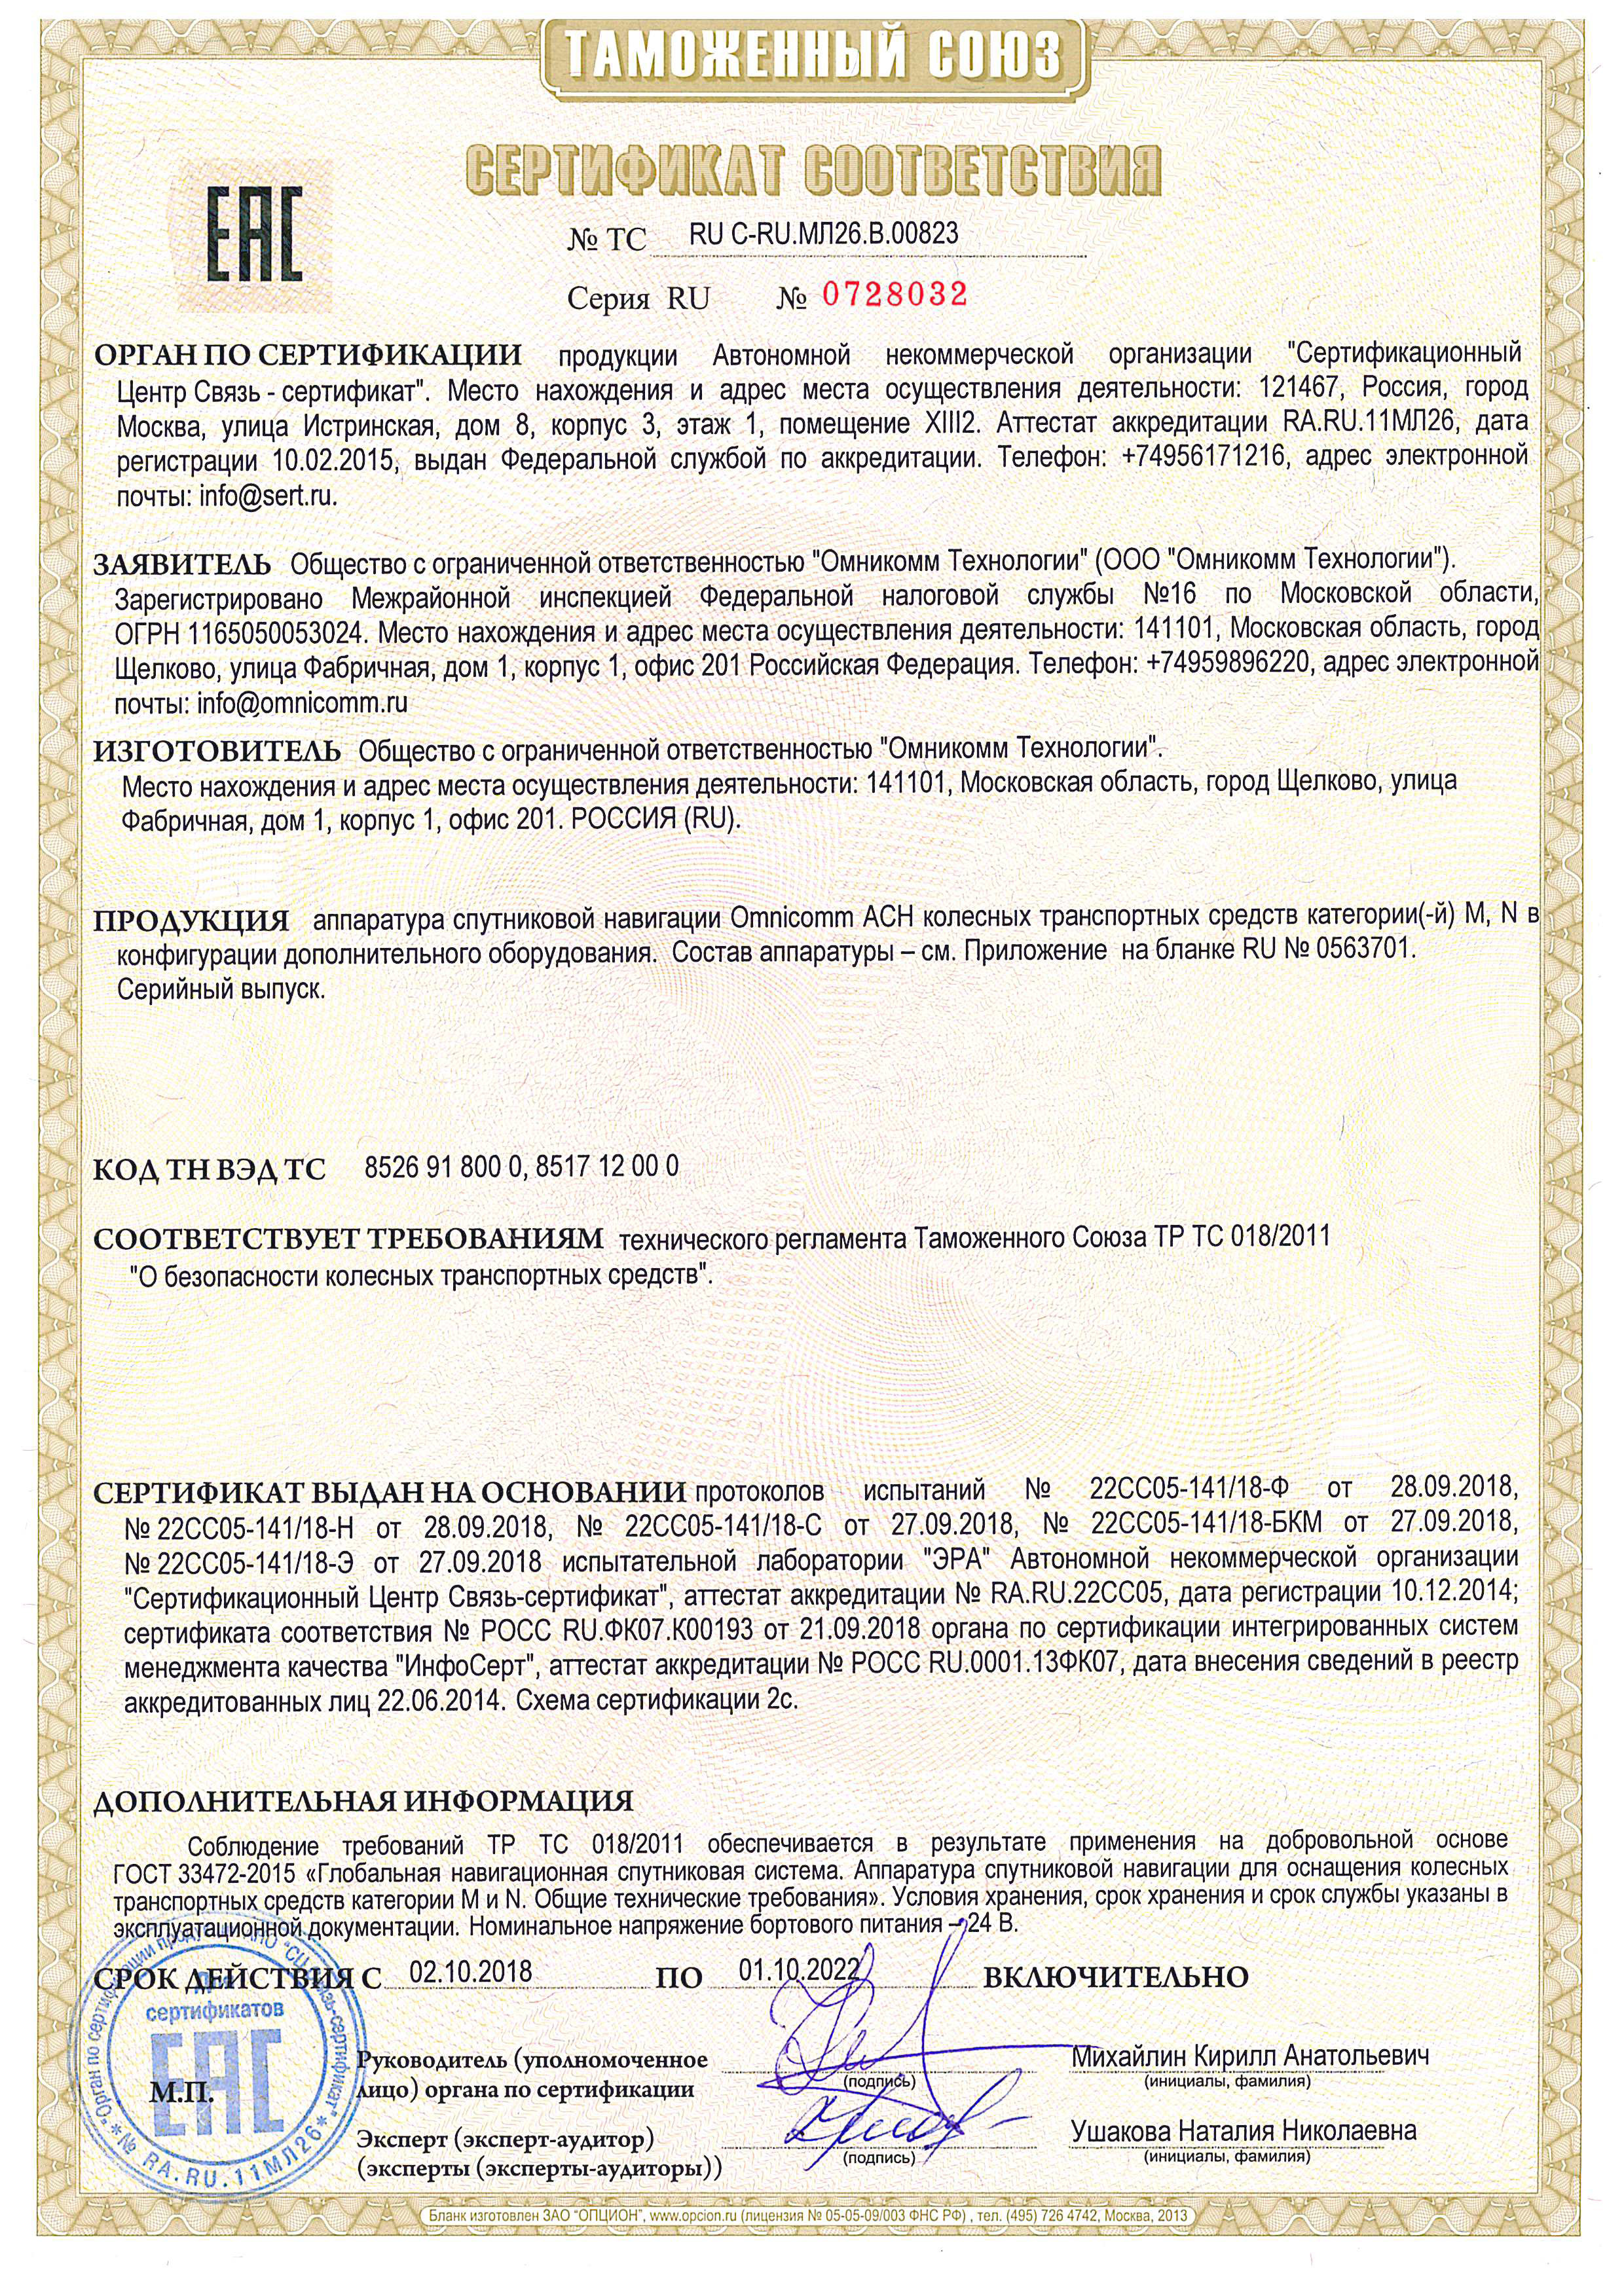 Сертификат соответствия требованиям ТР ТС 018 2011